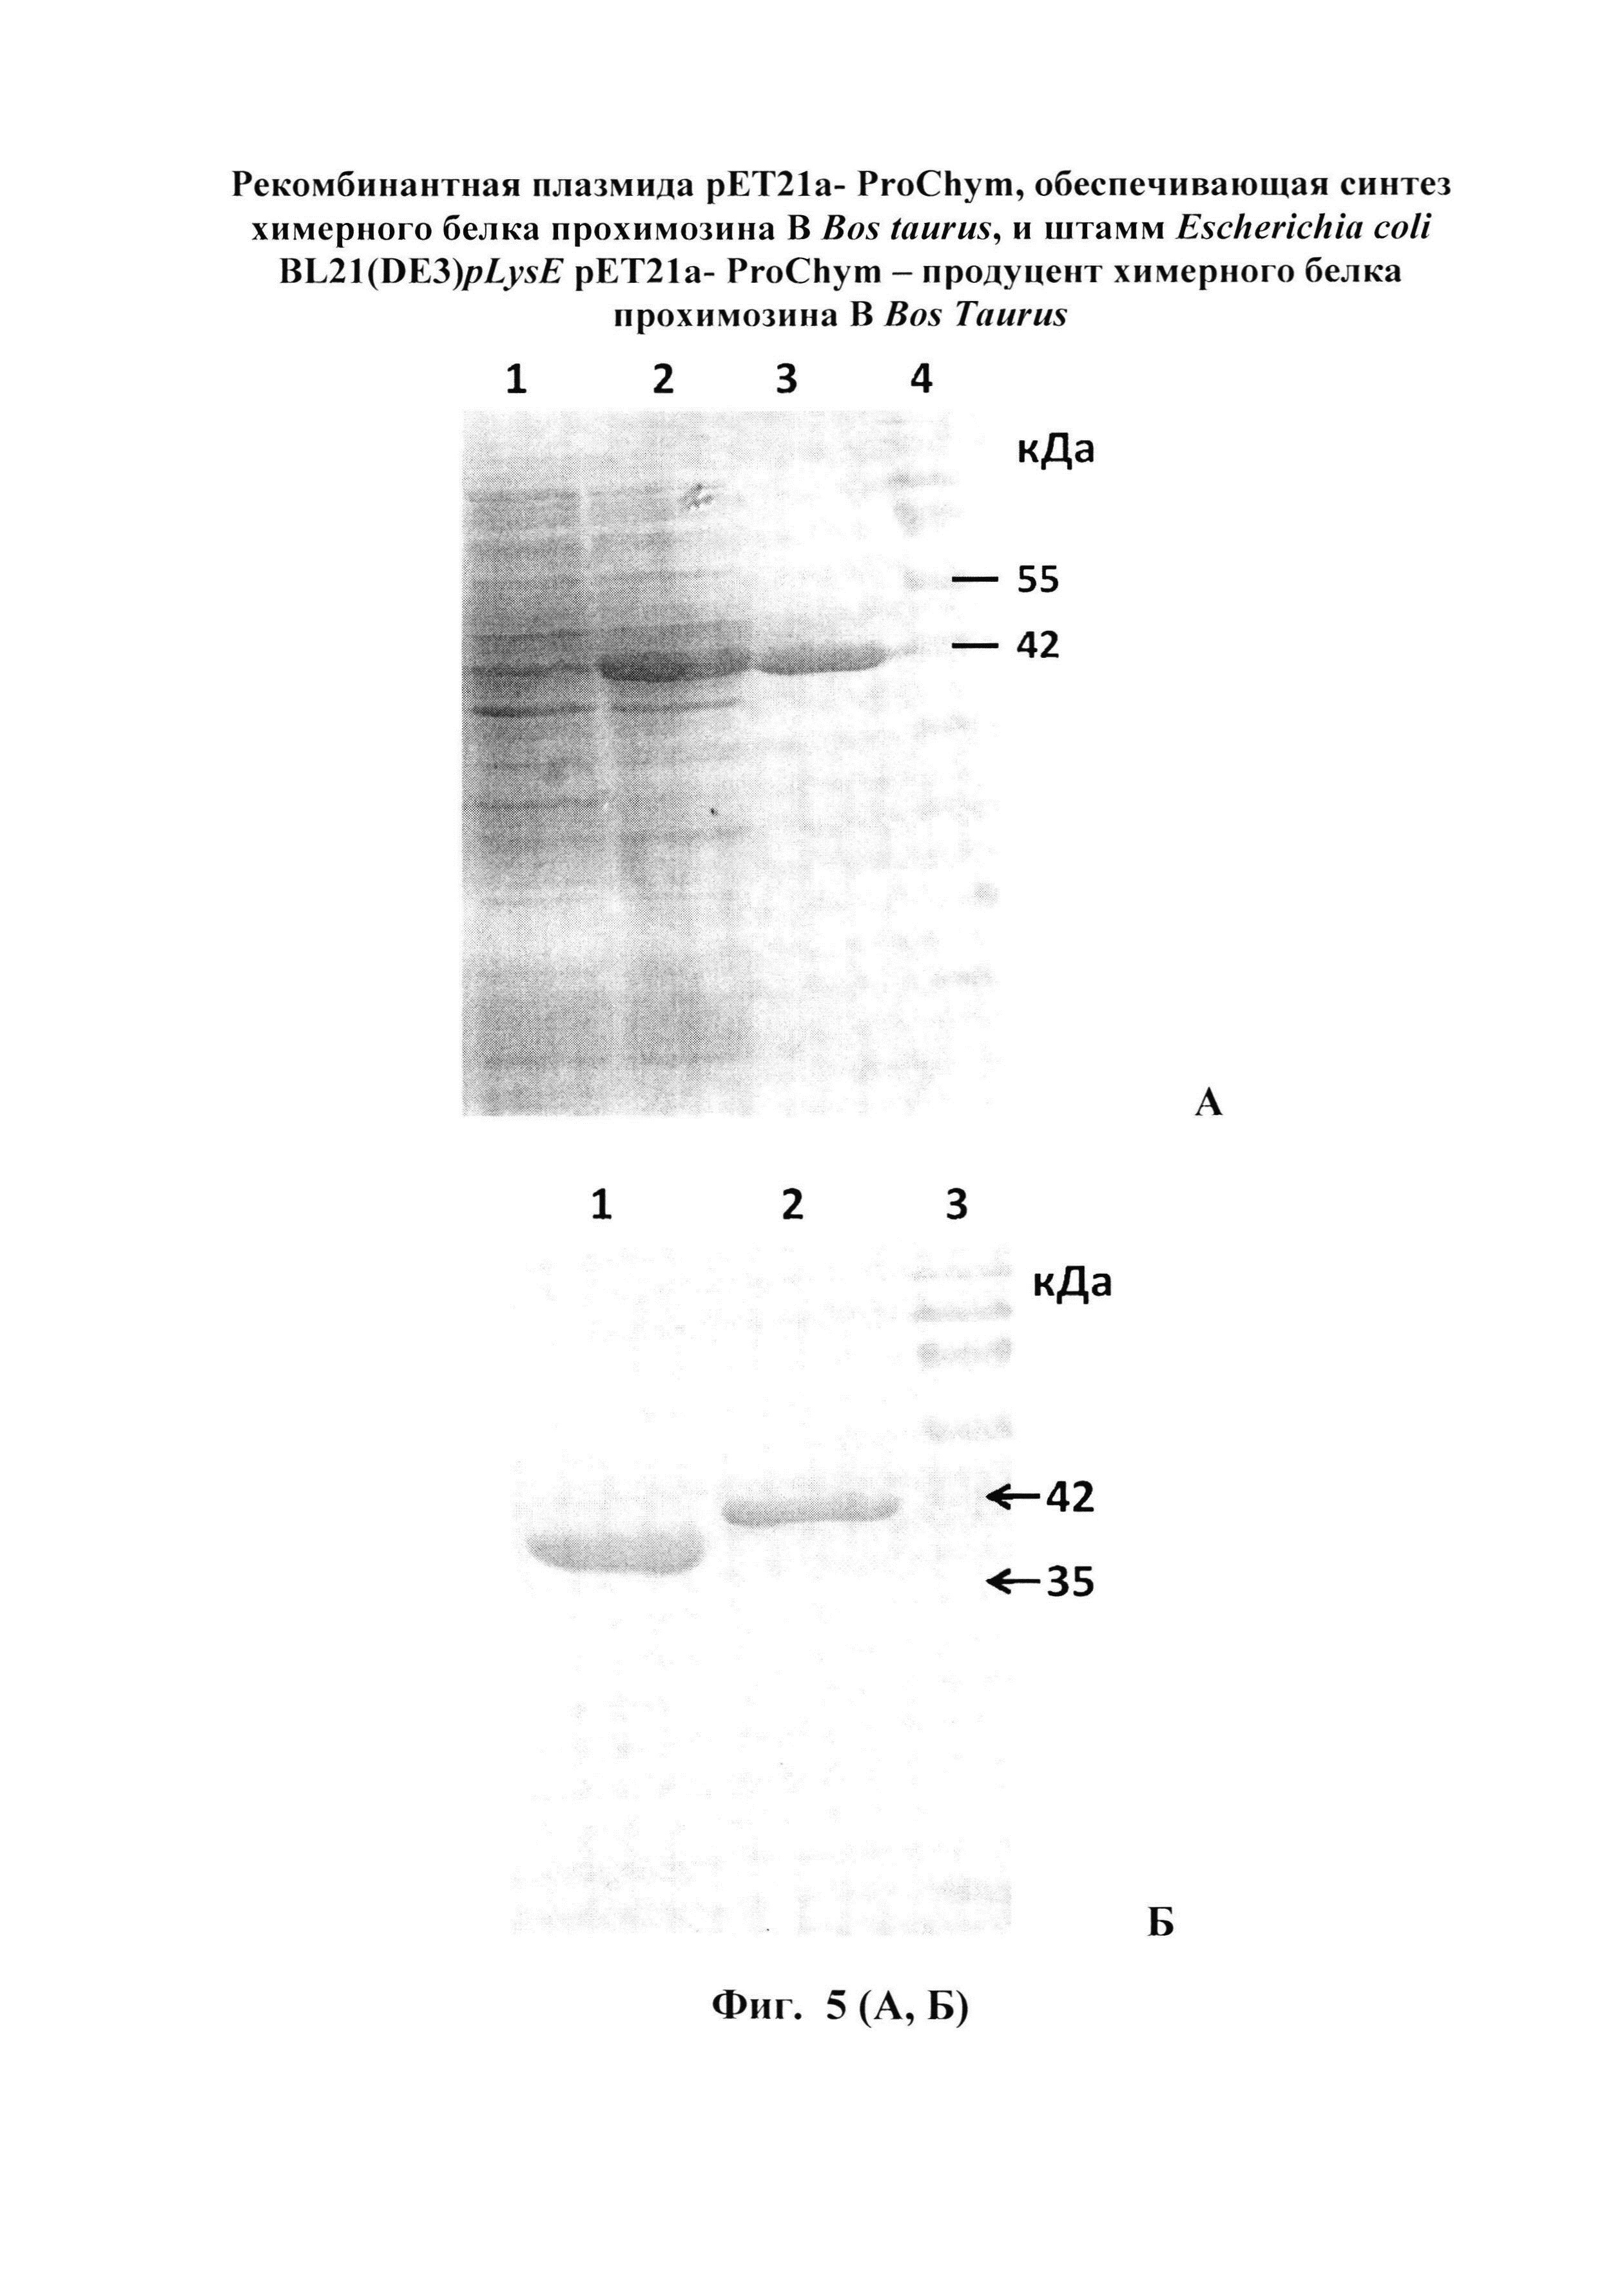 Рекомбинатная плазмида pET21a-ProChym, обеспечивающая синтез химерного белка прохимозина В Bos taurus, и штамм Escherichia coli BL21(DE3)pLysE pET21a-ProChym - продуцент химерного белка прохимозина В Bos Taurus